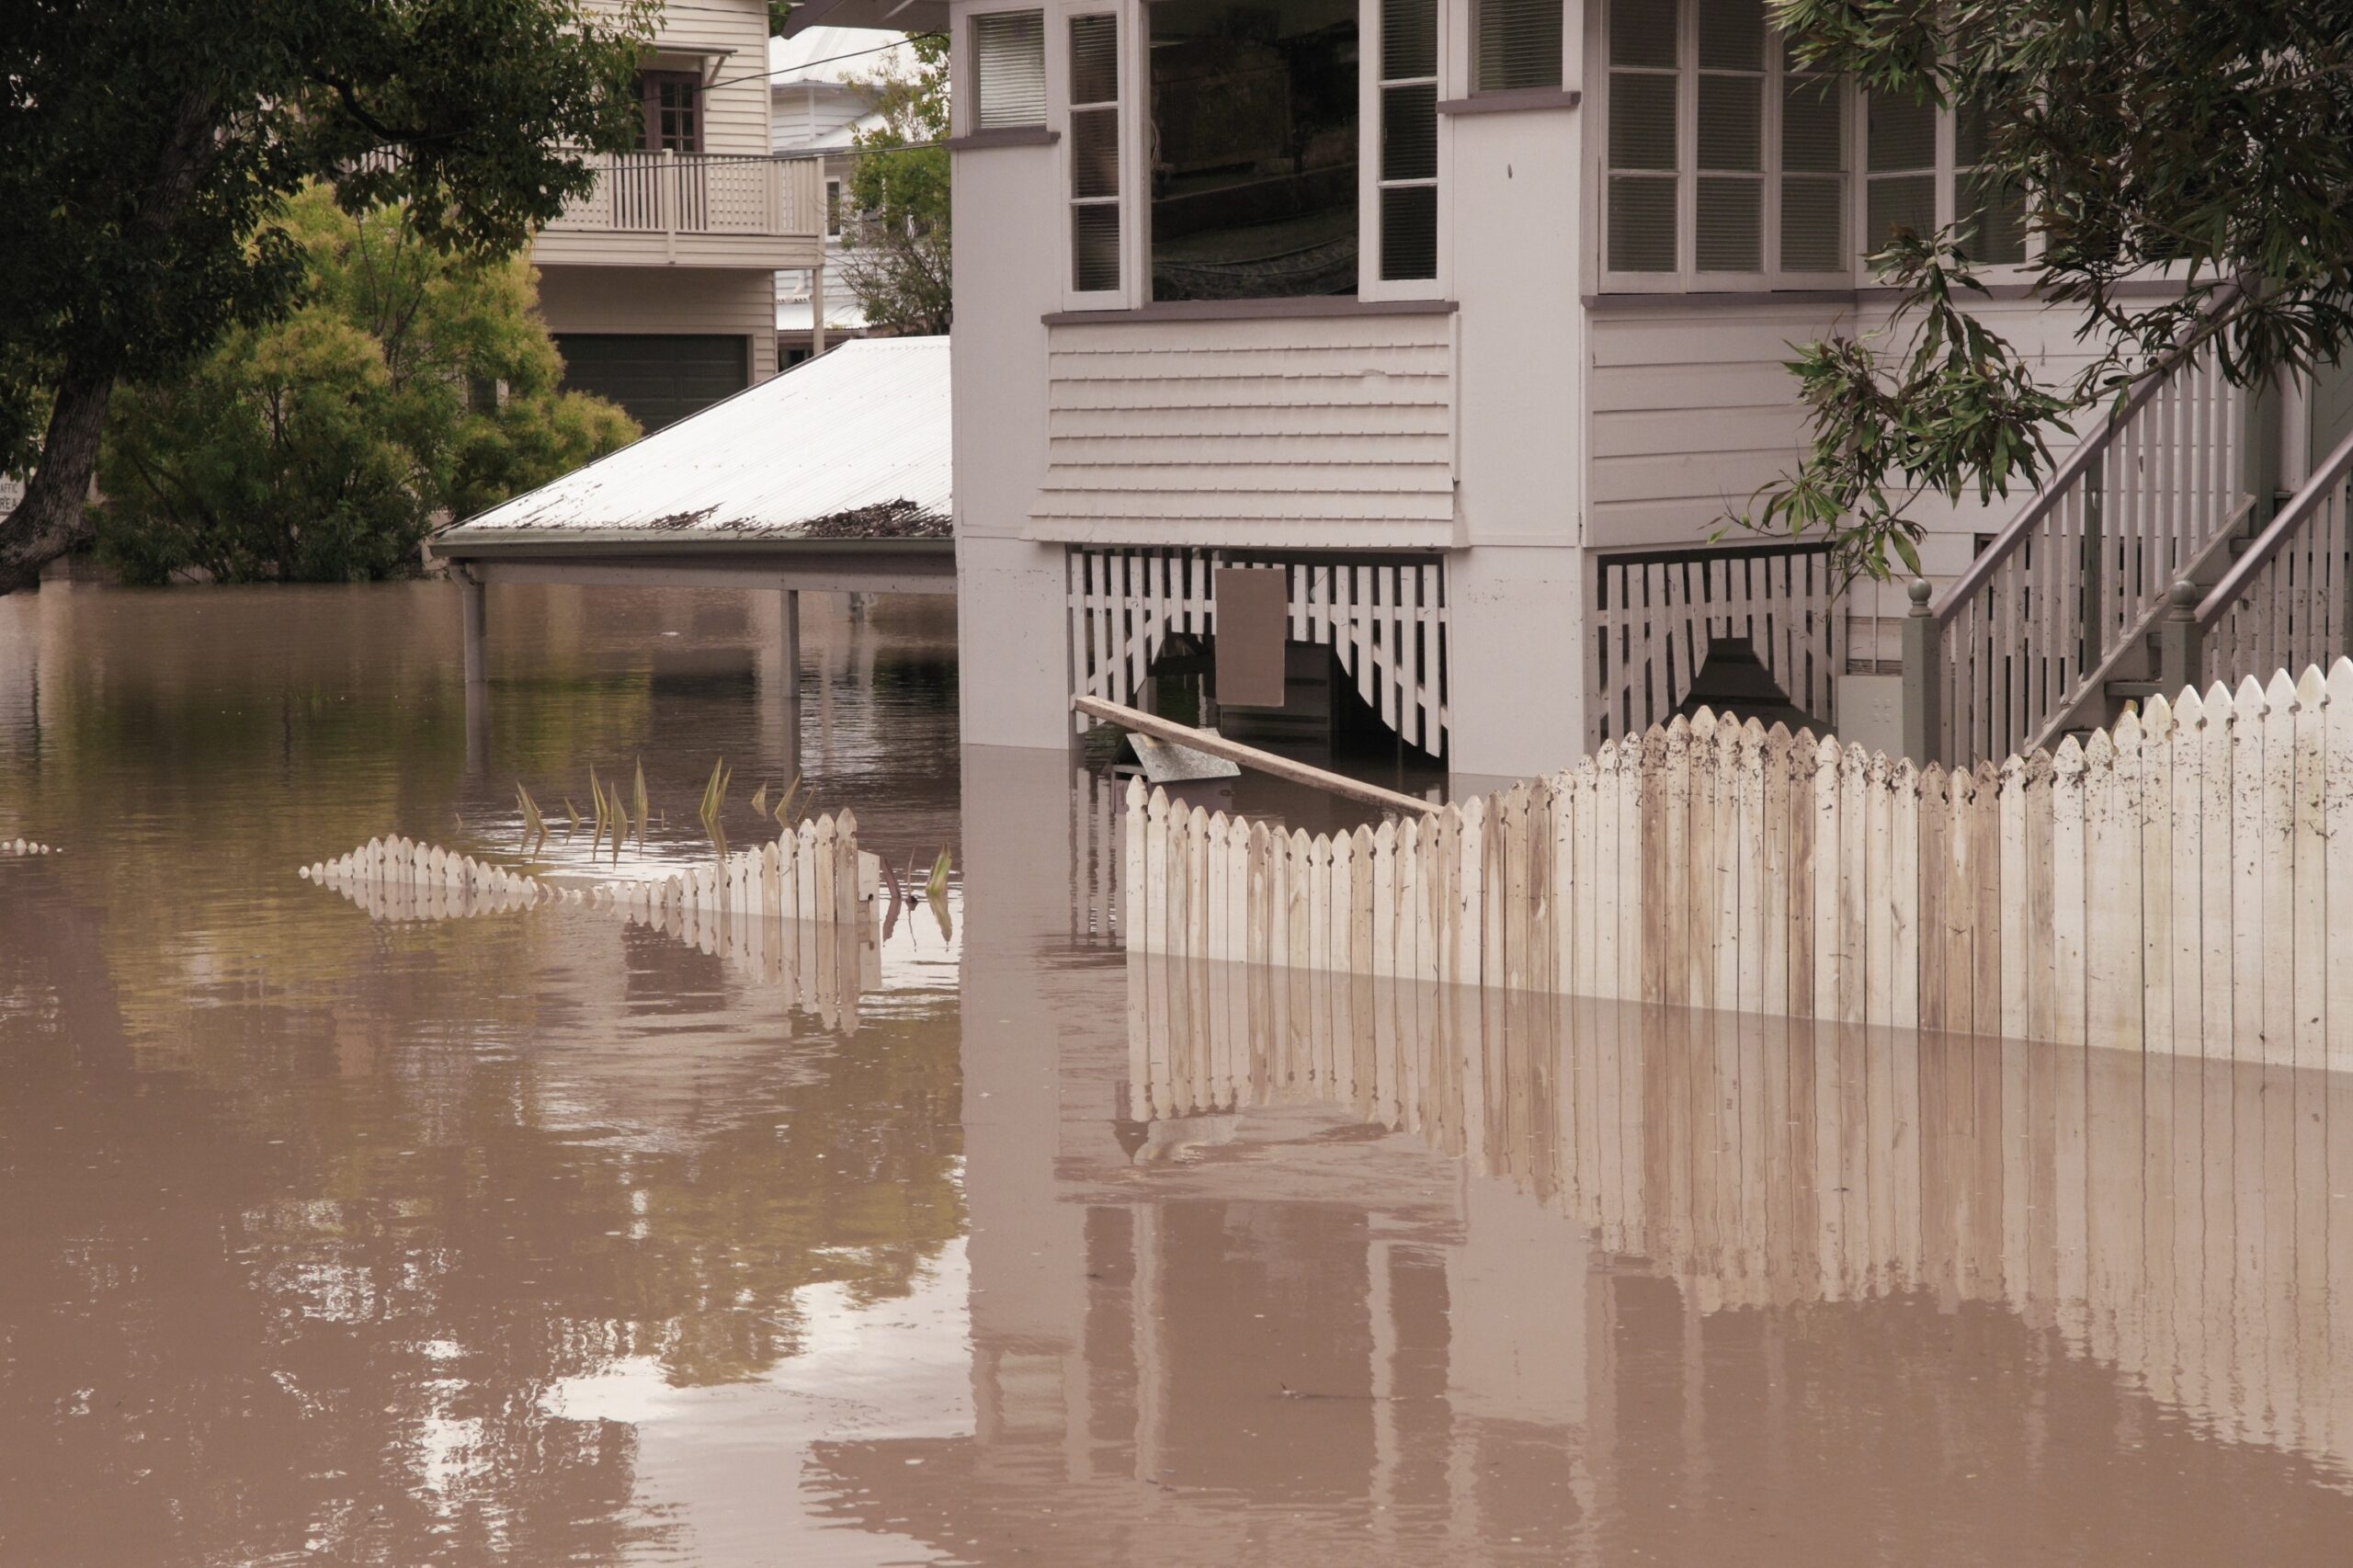 Queenslander house during flooding